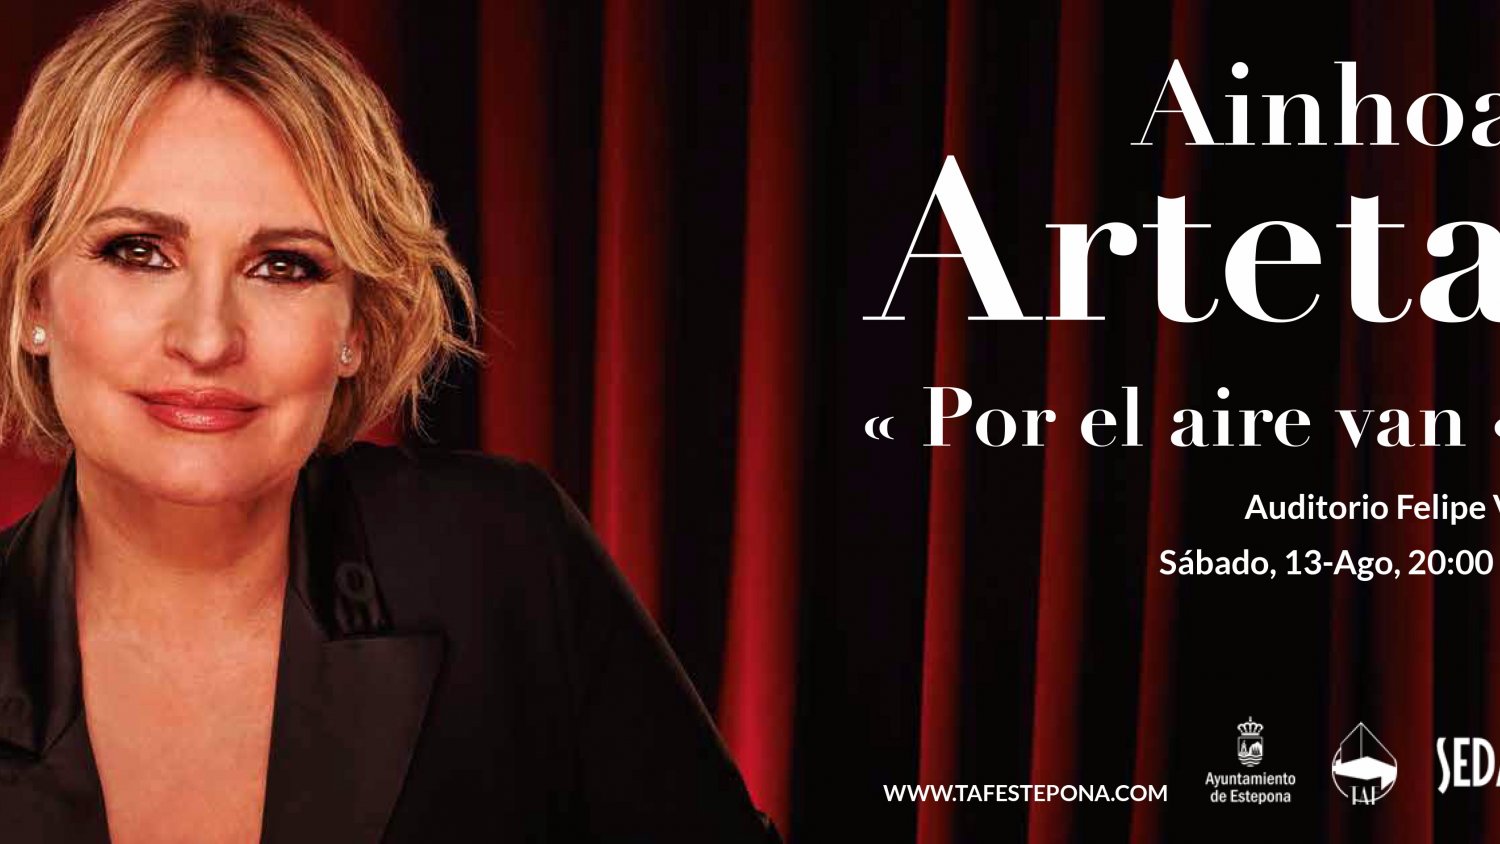 Ainhoa Arteta ofrece este sábado un concierto en el Auditorio Felipe VI de Estepona